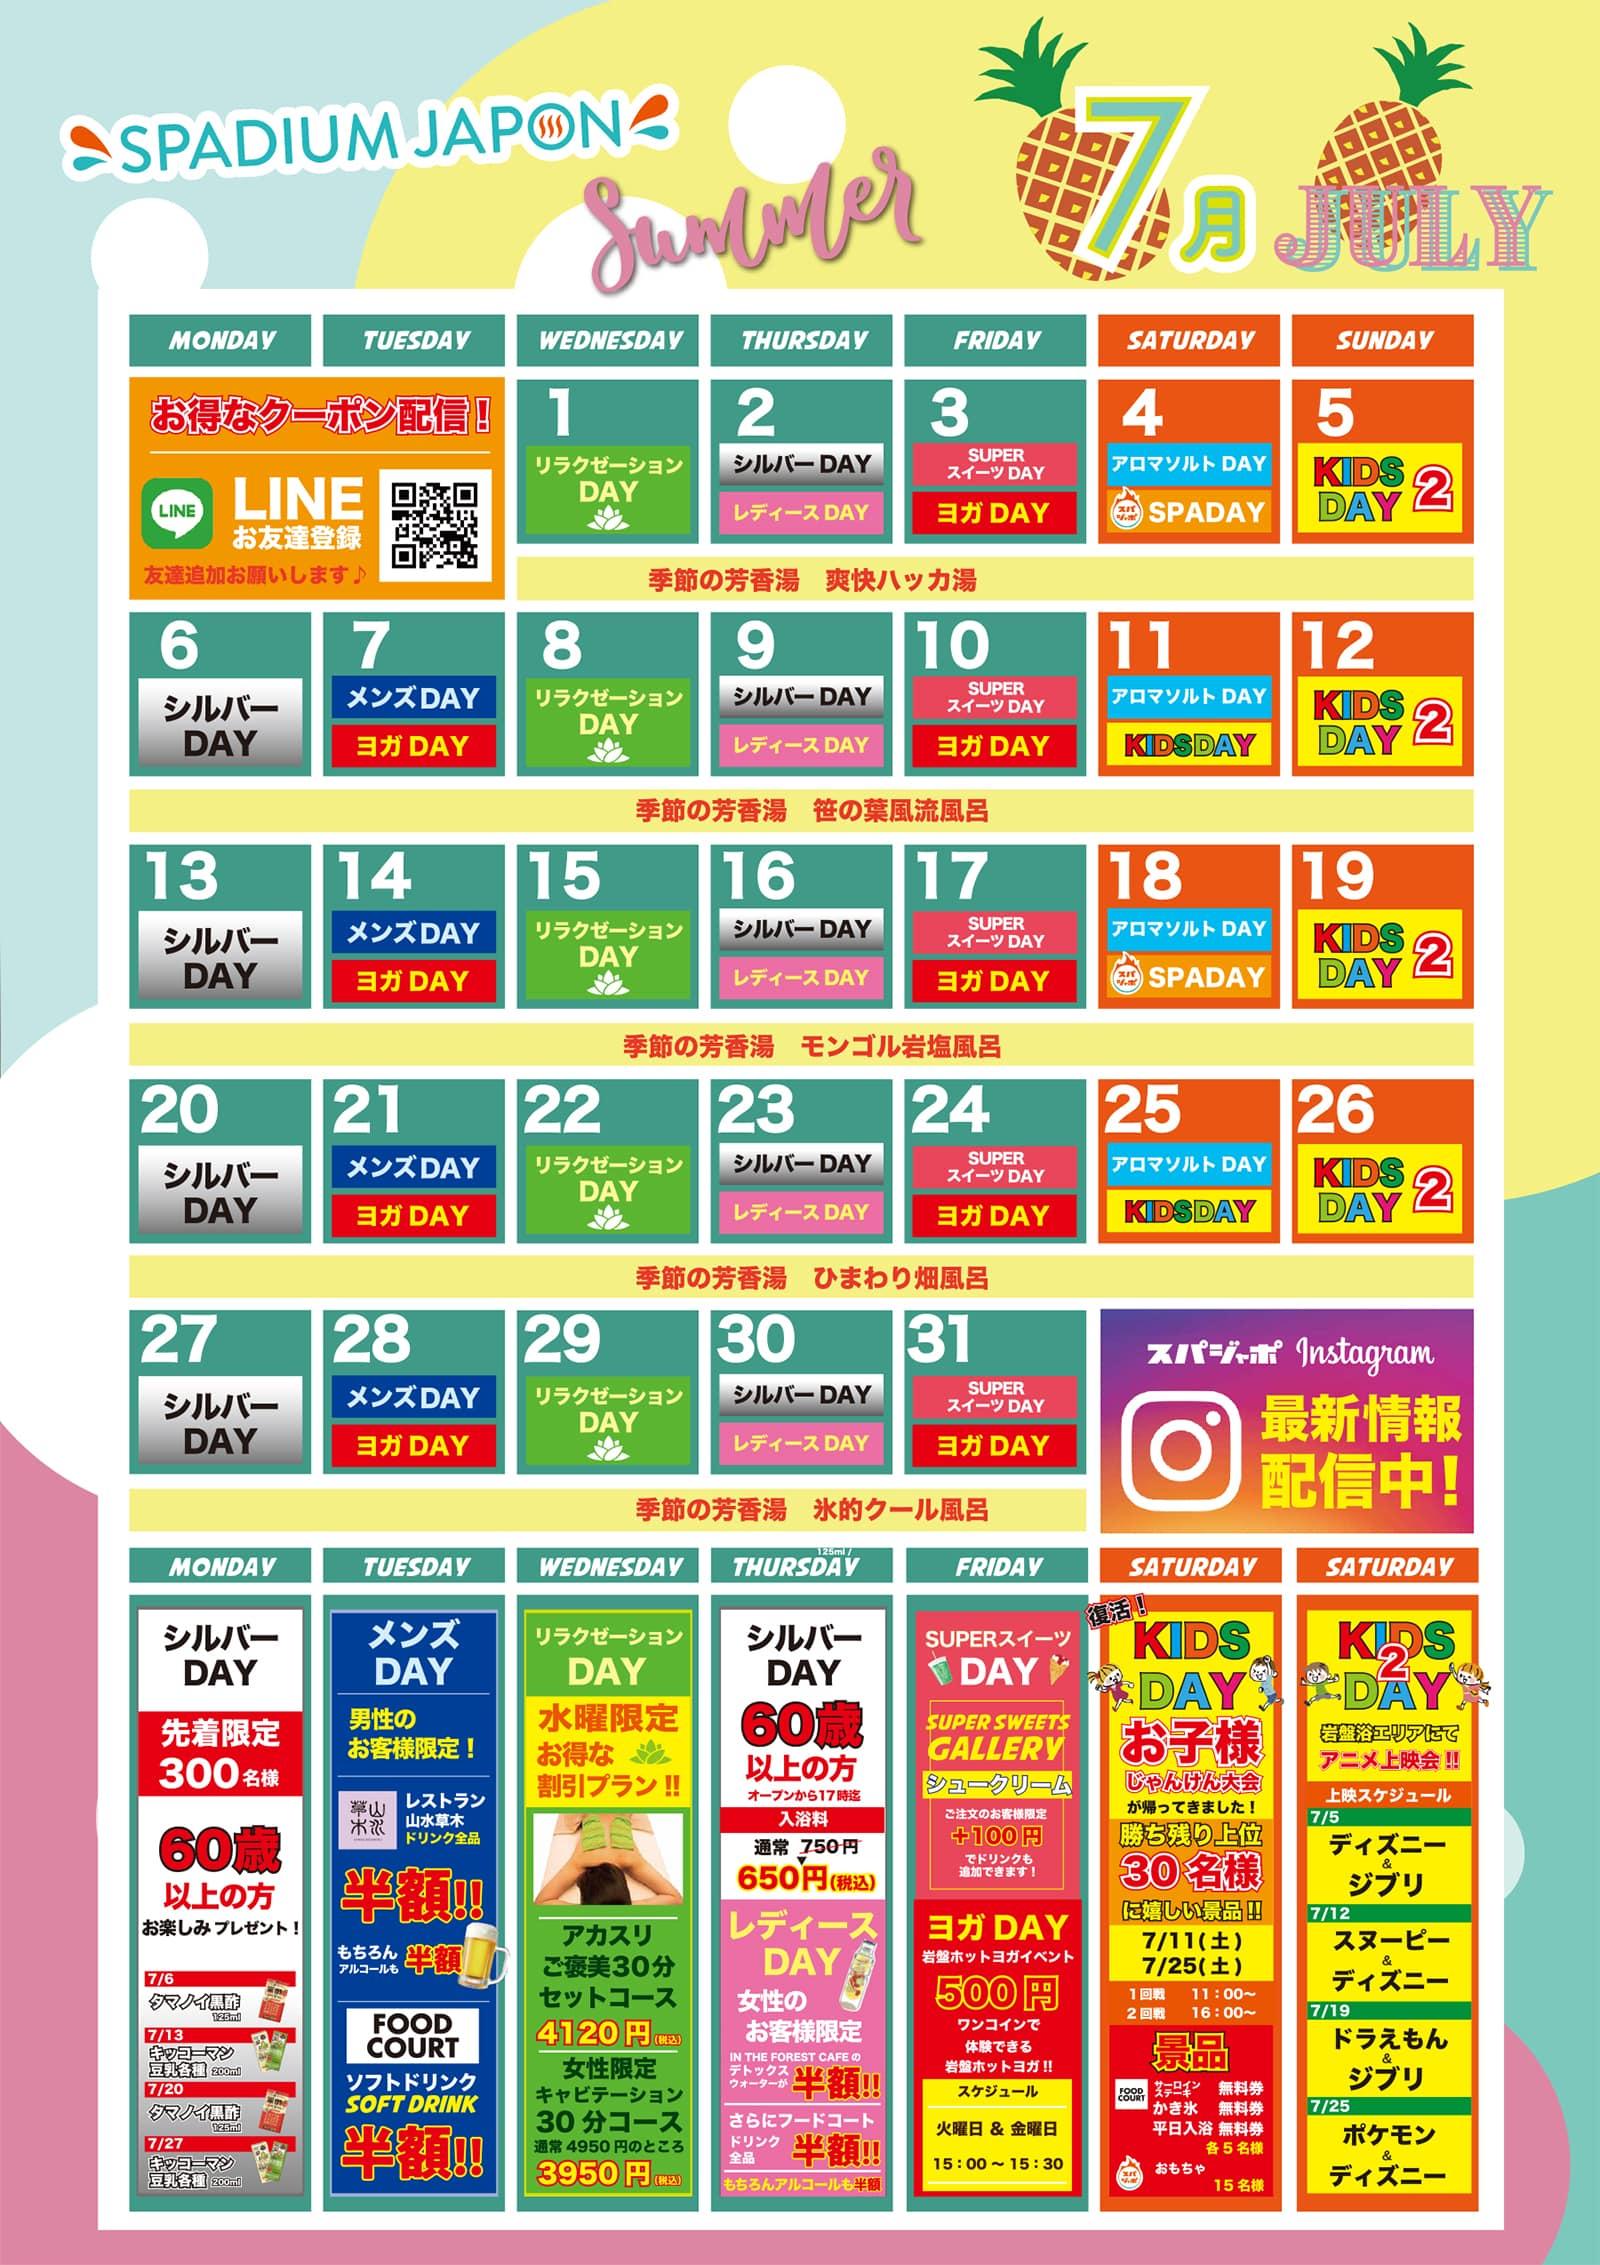 イベントカレンダー7月 天然温泉 岩盤浴 スパジアムジャポン スパジャポ